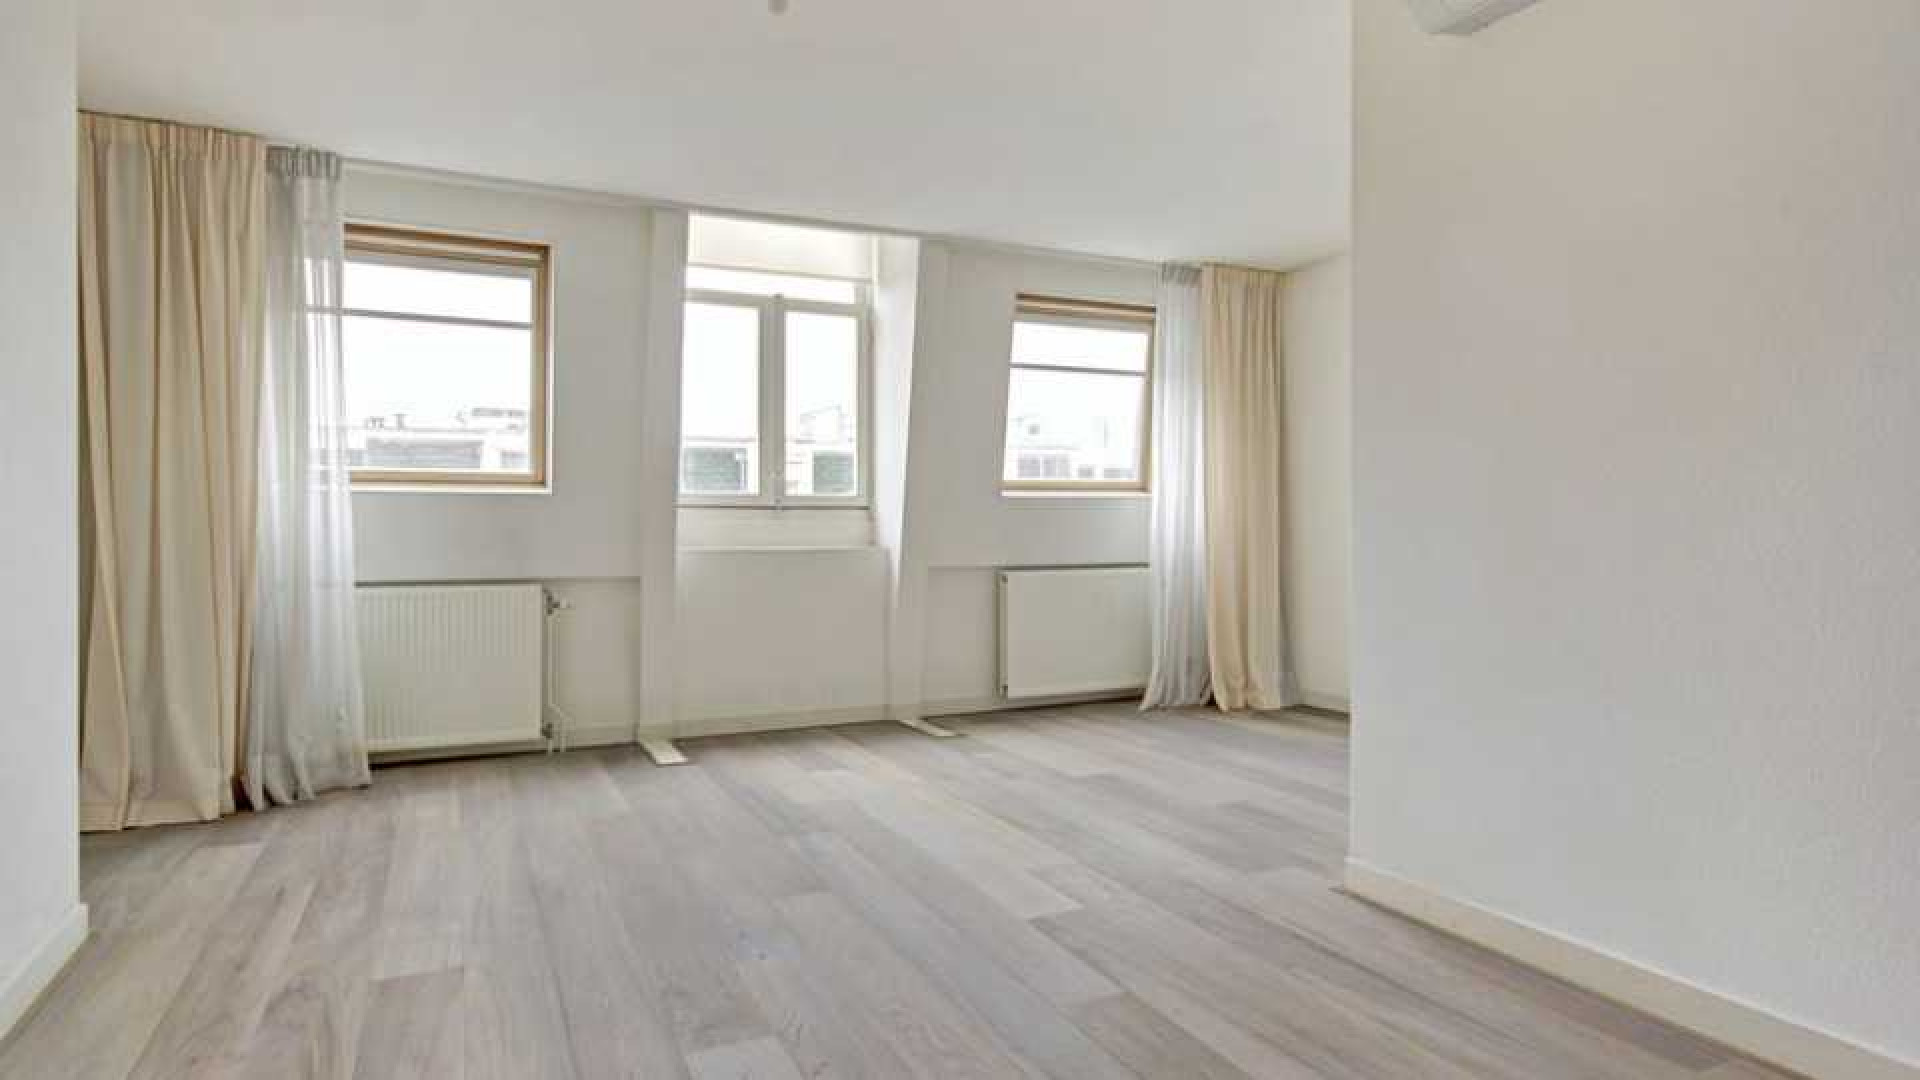 Daphne Deckers en Richard Krajicek zetten hun appartement te huur. Zie foto's 9